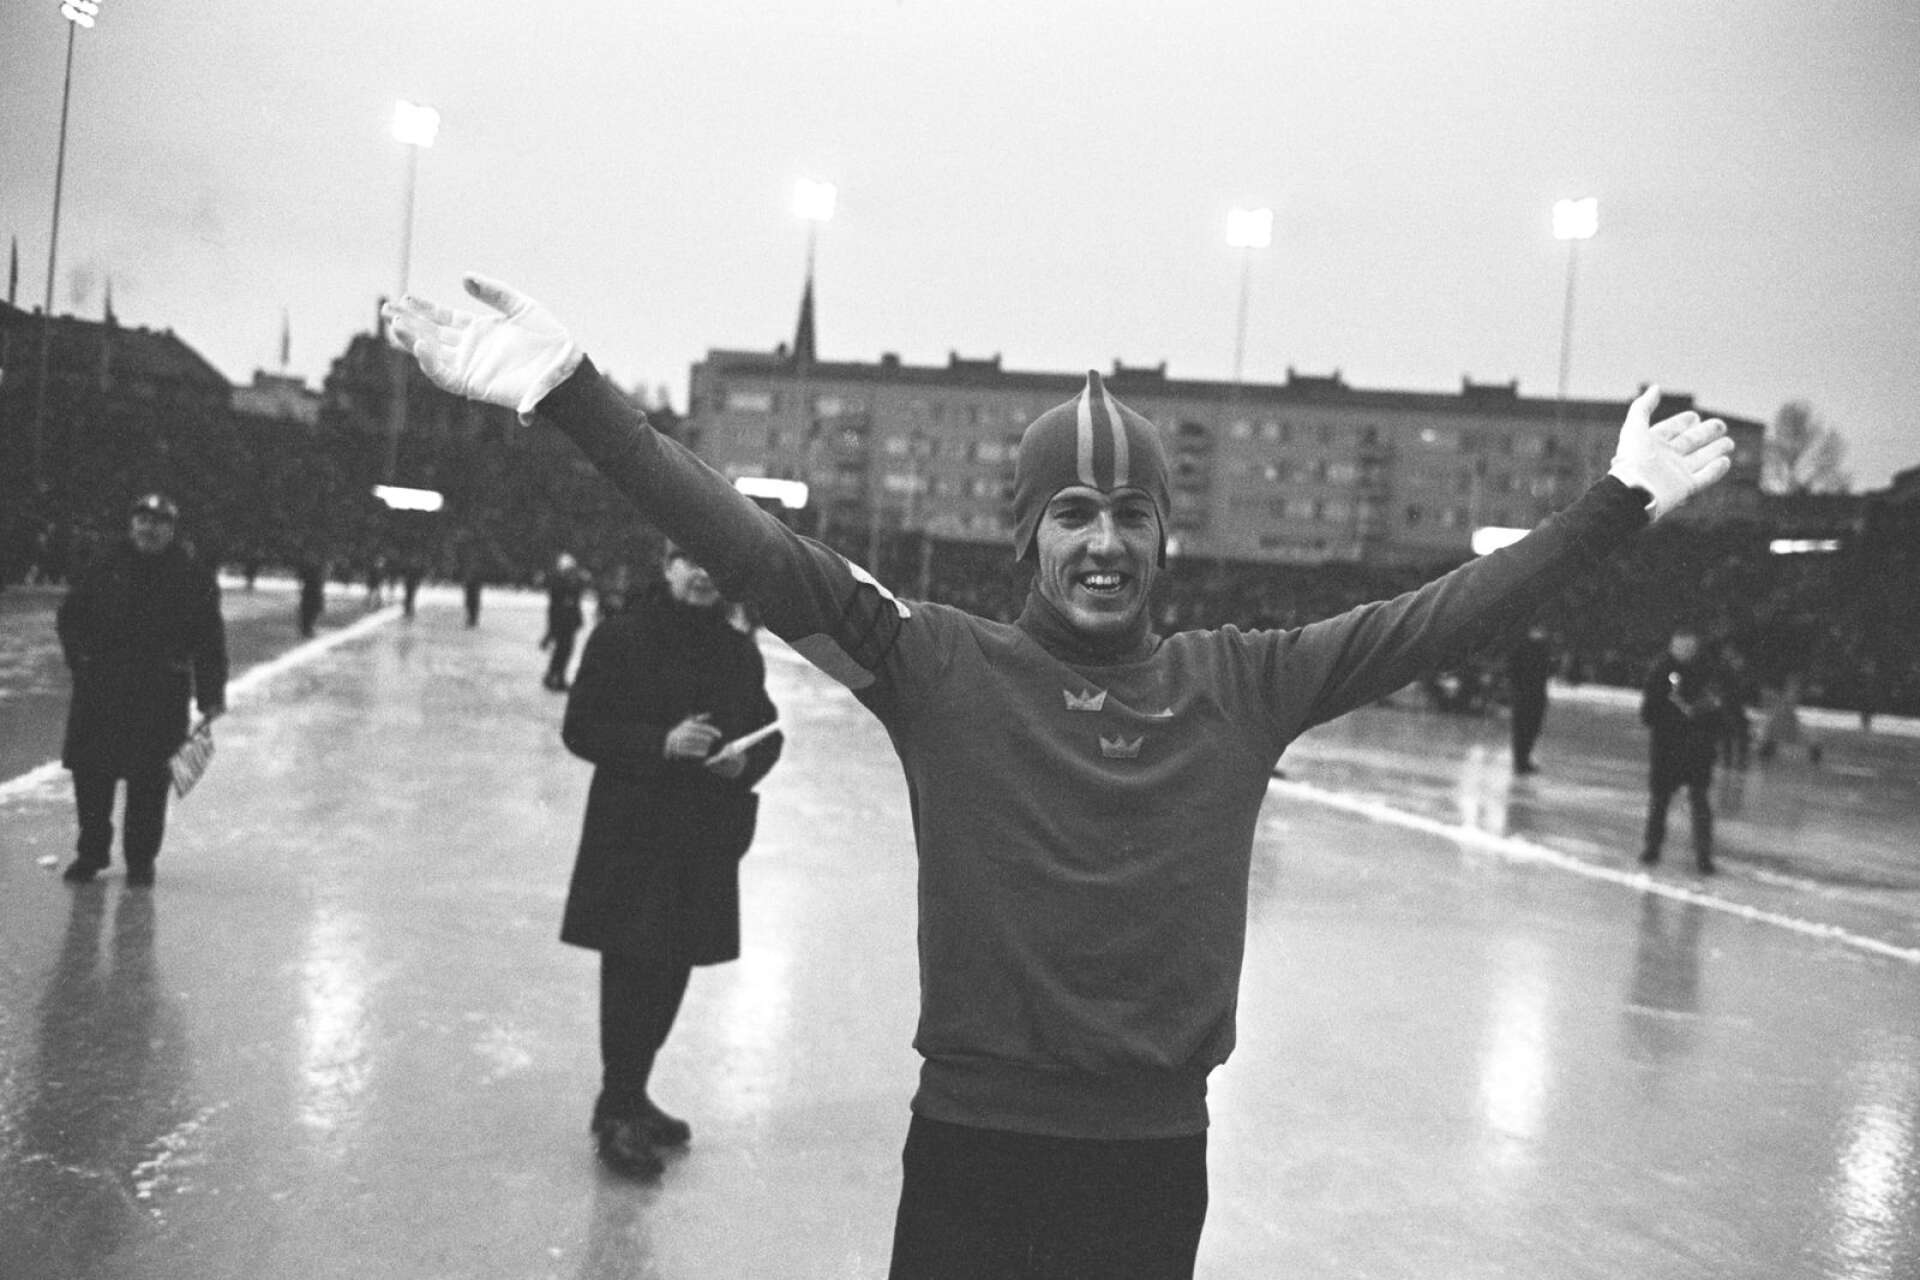 Oslo den 13 februari 1965. Här vinner Jonny Nilsson VM-guld på 5000 meter med tiden 7.33.2, vilket också var ett nytt världsrekord. 